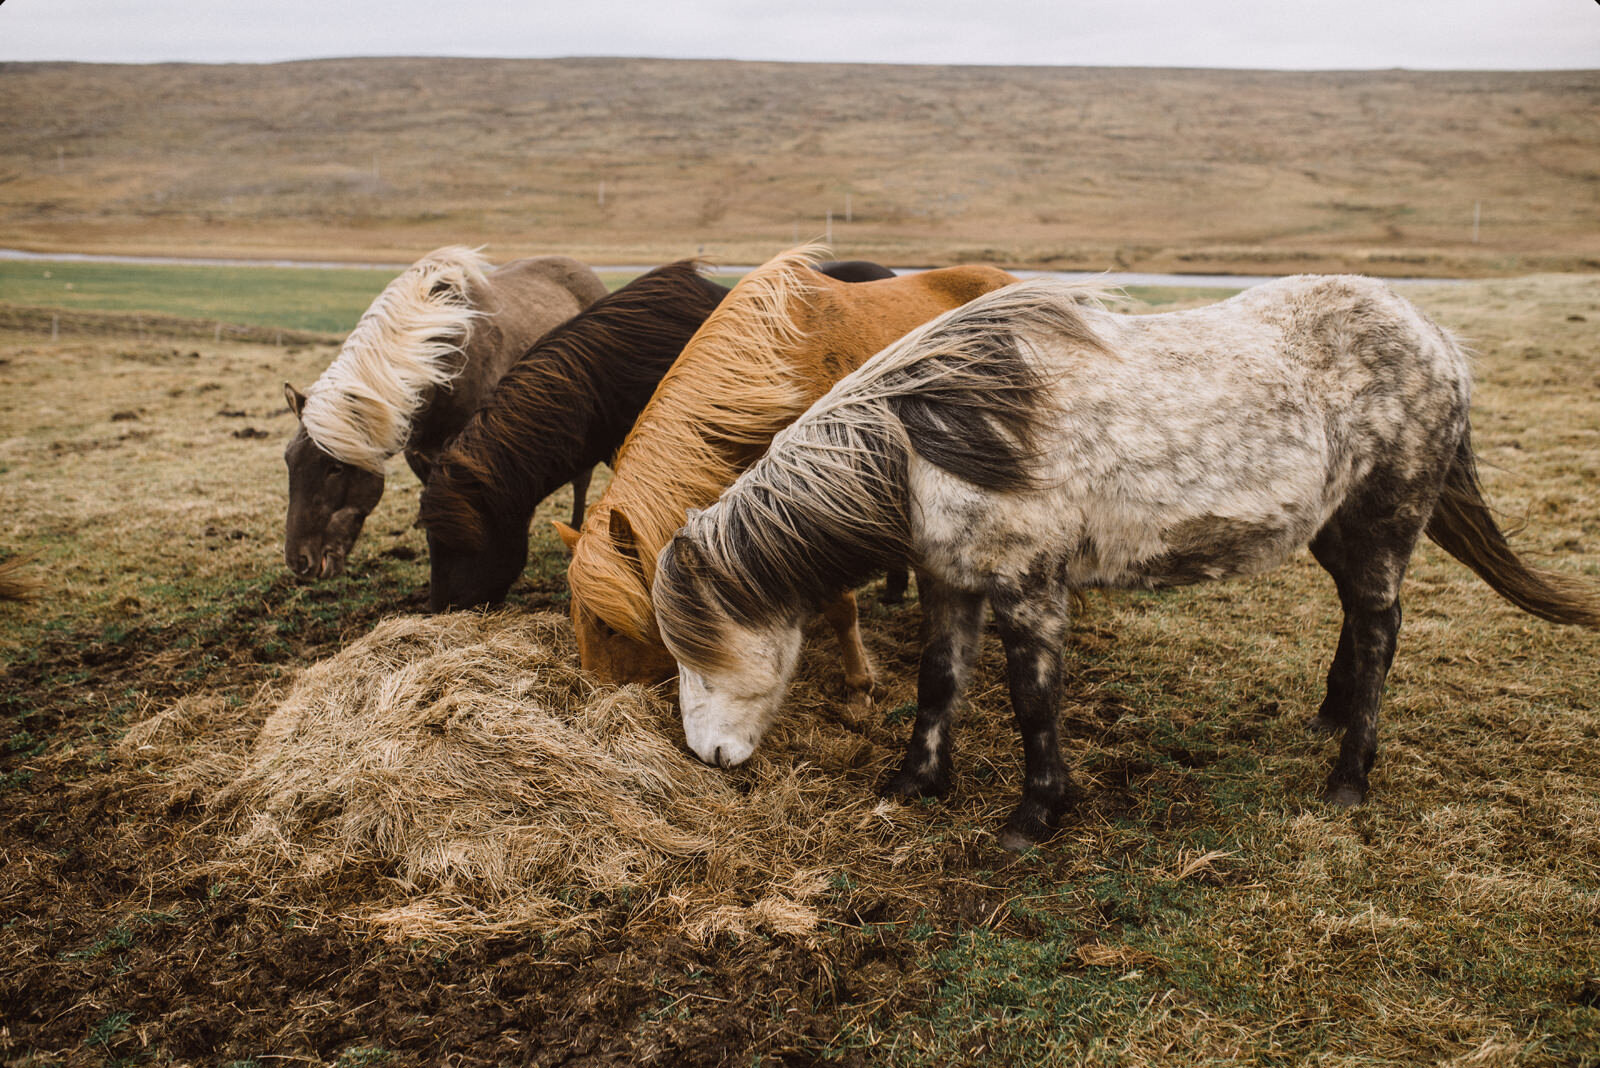  Ngựa Iceland theo chân những người Viking đến Iceland từ những năm 900 và sau cả nghìn năm sống biệt lập, chúng trở thành một trong những giống ngựa thuần chủng nhất thế giới. Thể hình nhỏ nhưng khoẻ, thân thiện và sống lâu. Chính vì thế chính phủ I